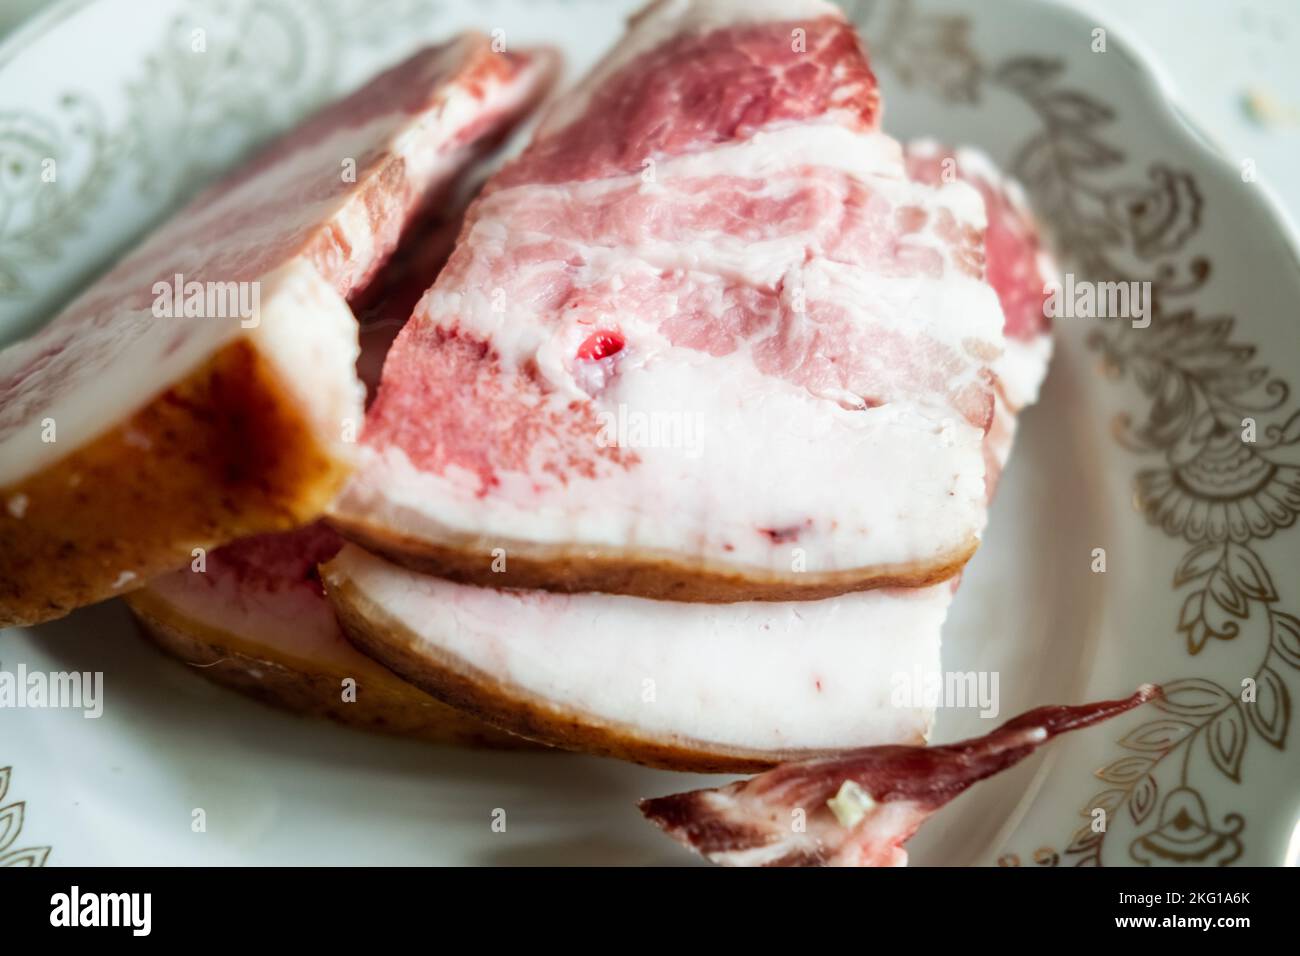 Tranches de bacon sur une assiette. Morceaux de salo avec viande. Banque D'Images